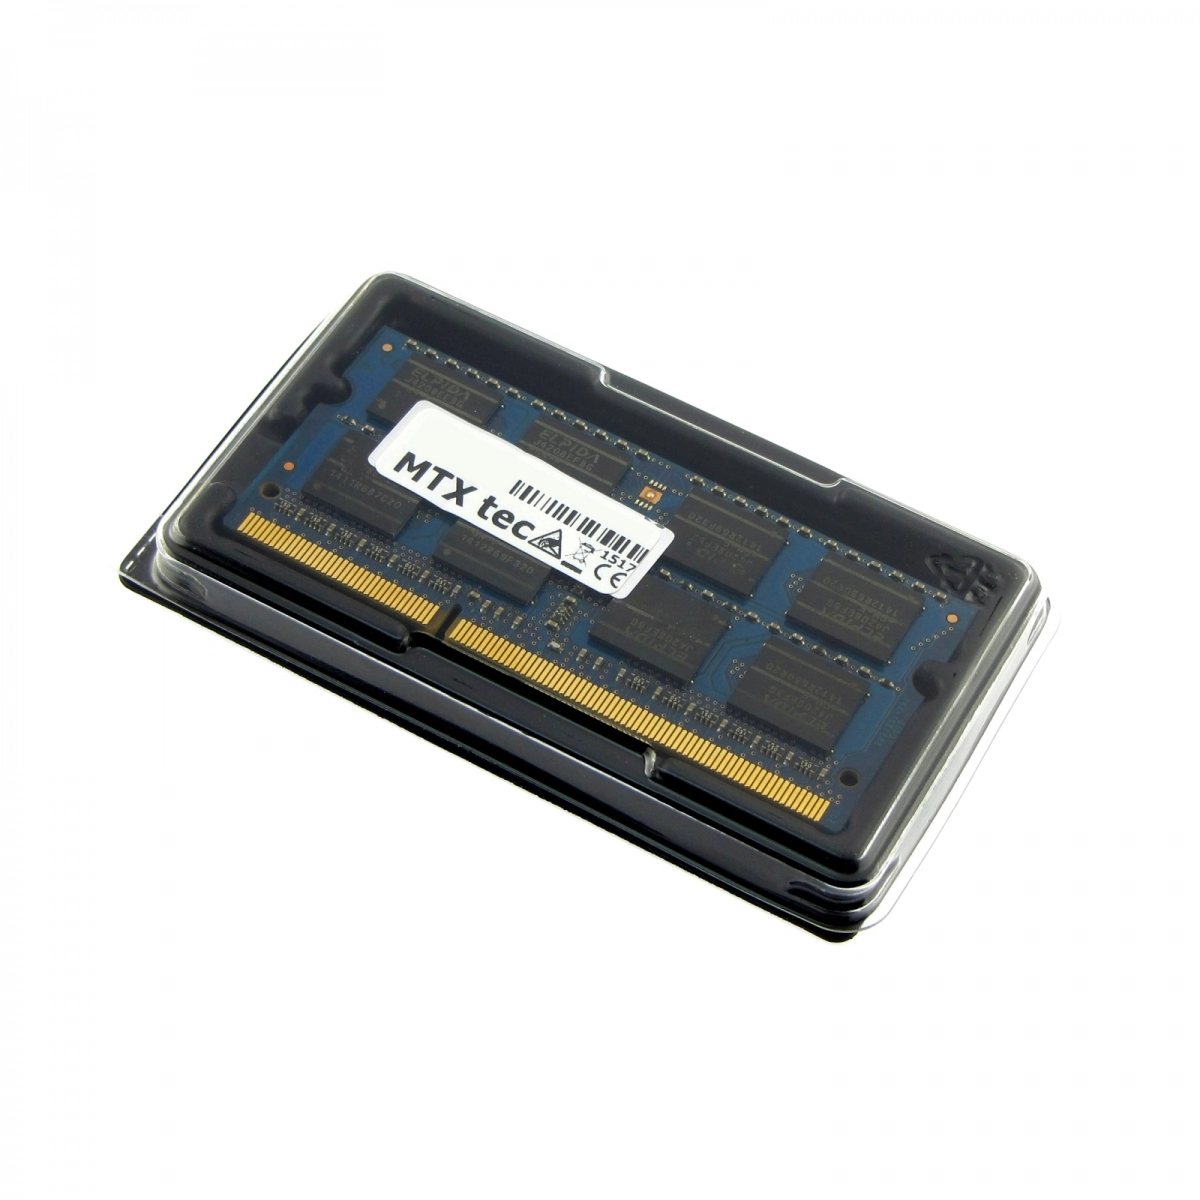 MTXtec Arbeitsspeicher 8 GB RAM für ASUS X552C